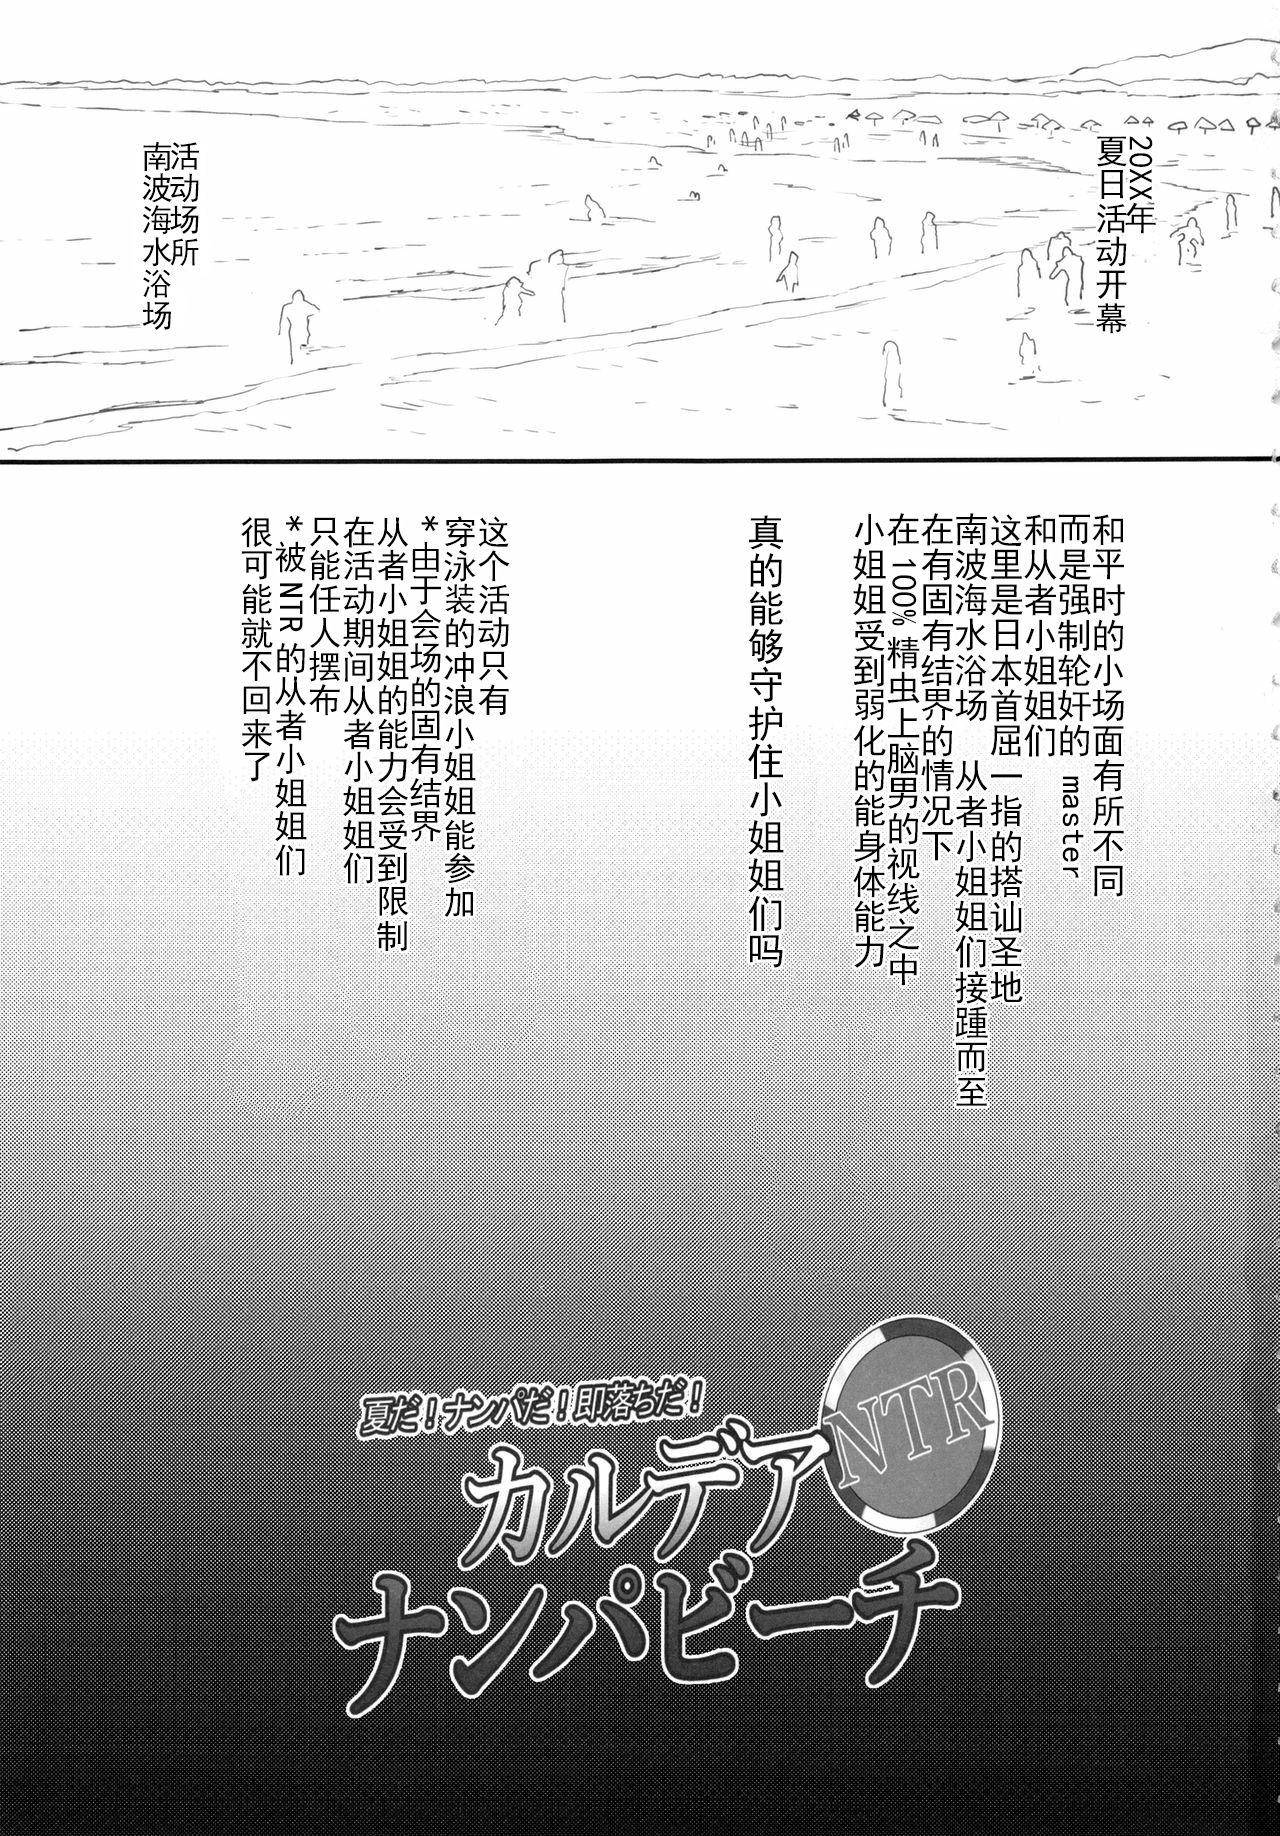 禁断姦淫 vol.15 母子姦姦[アンソロジー][中文][Anthology]Kindan Kanin Vol. 15 Boshi Kankan[Chinese](194页)-第1章-图片20